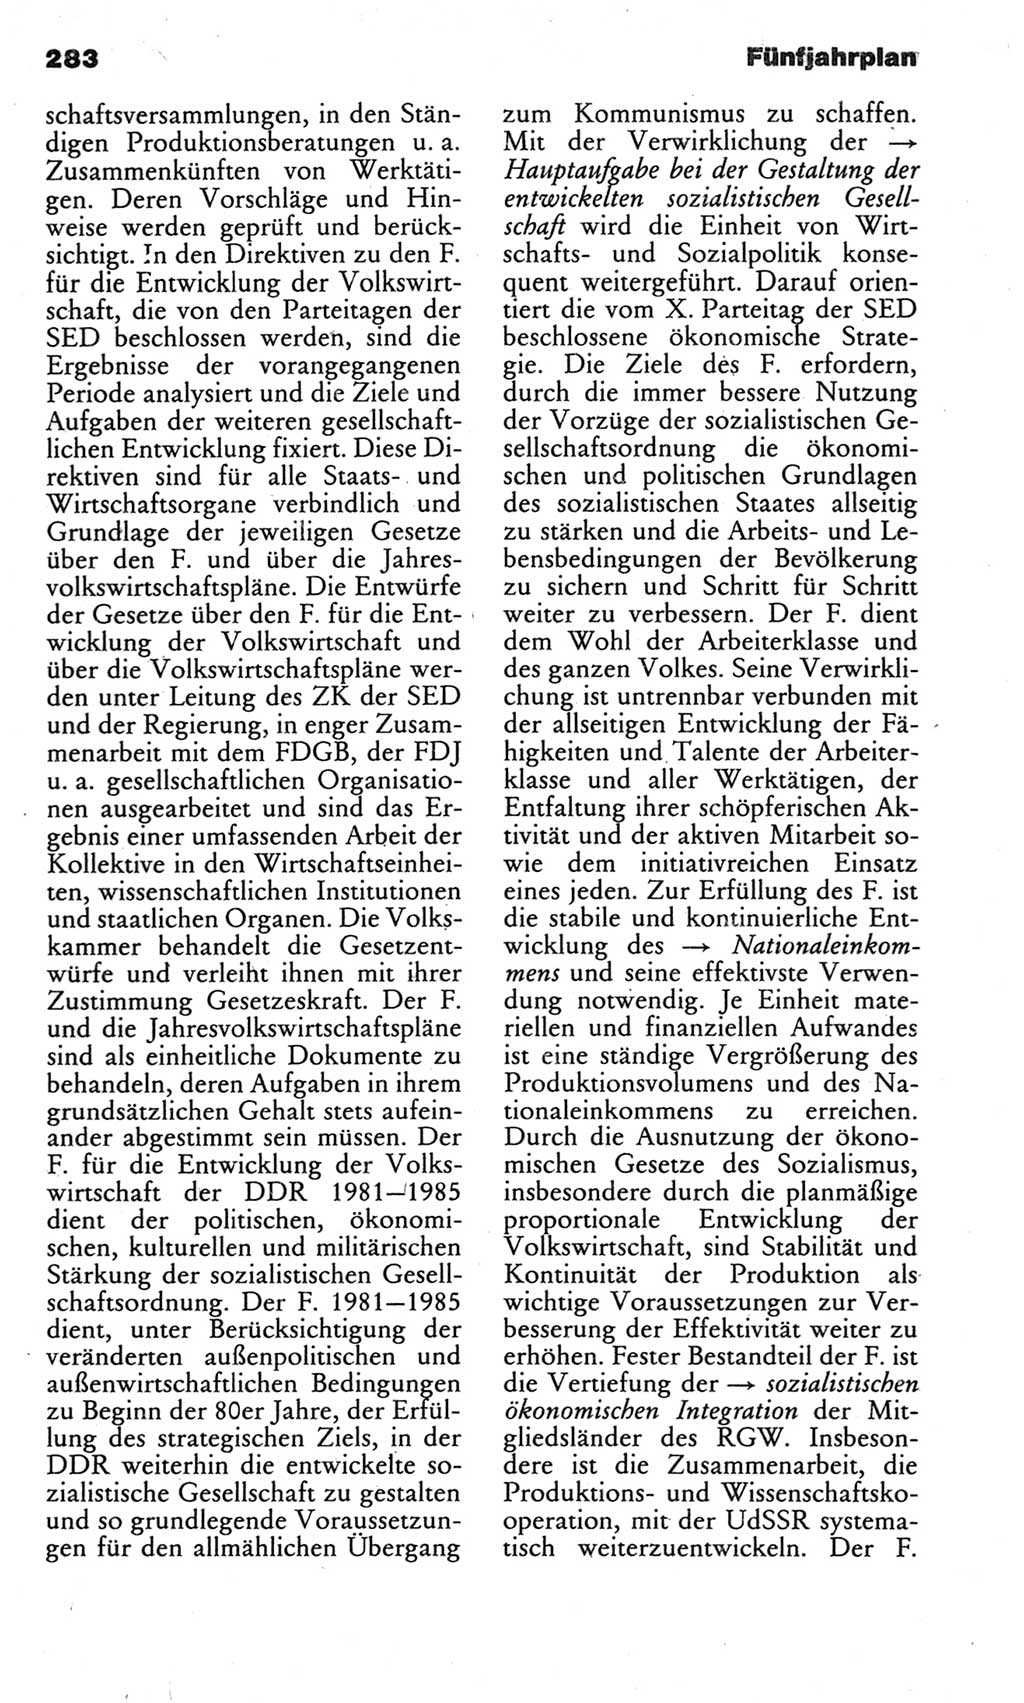 Kleines politisches Wörterbuch [Deutsche Demokratische Republik (DDR)] 1983, Seite 283 (Kl. pol. Wb. DDR 1983, S. 283)